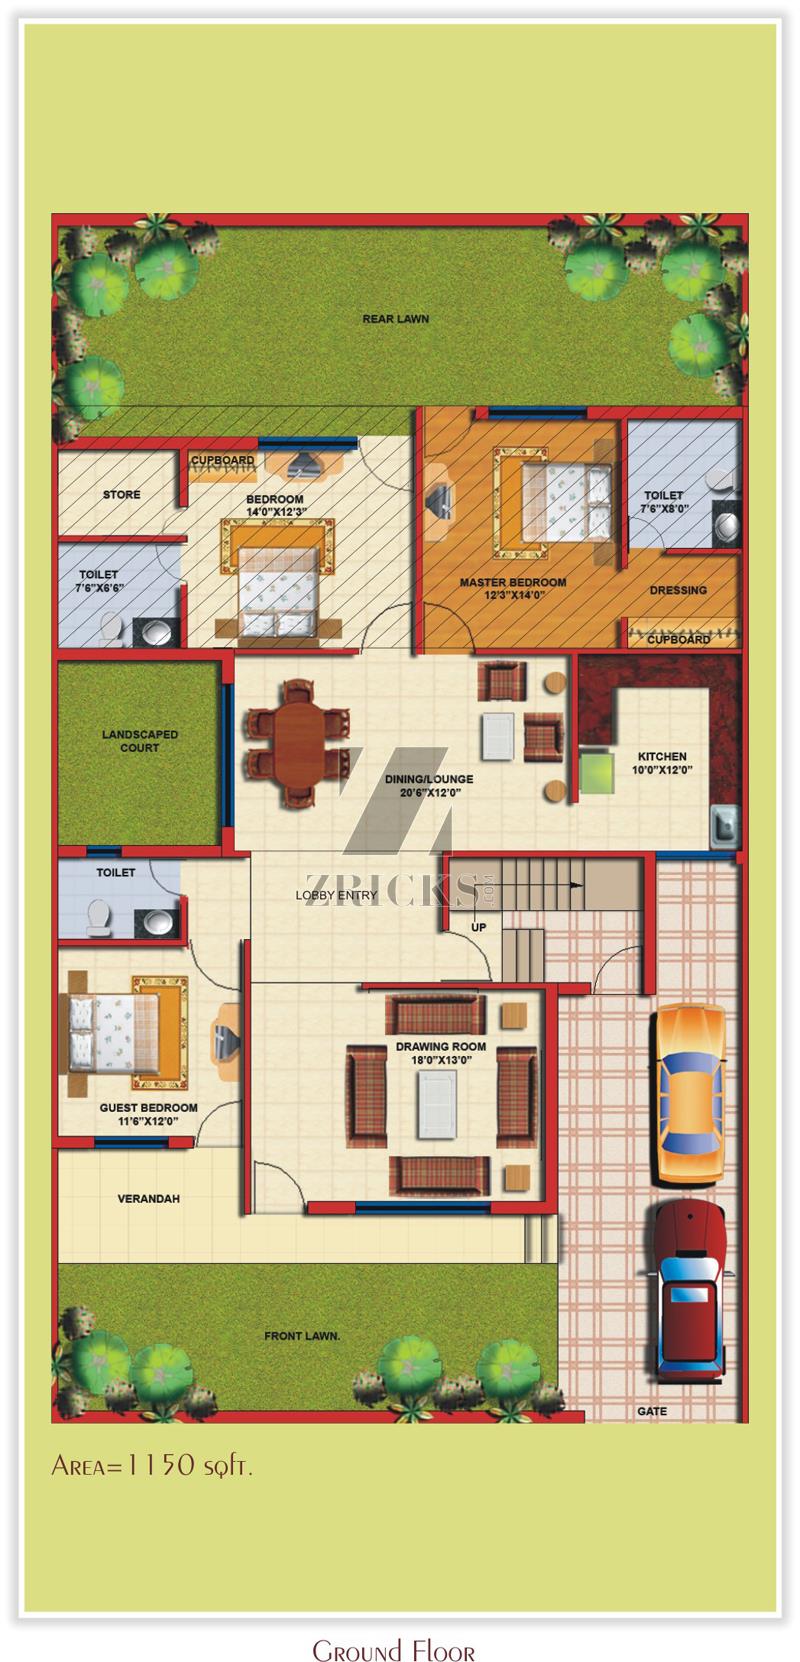 TDI City Villas Floor Plan